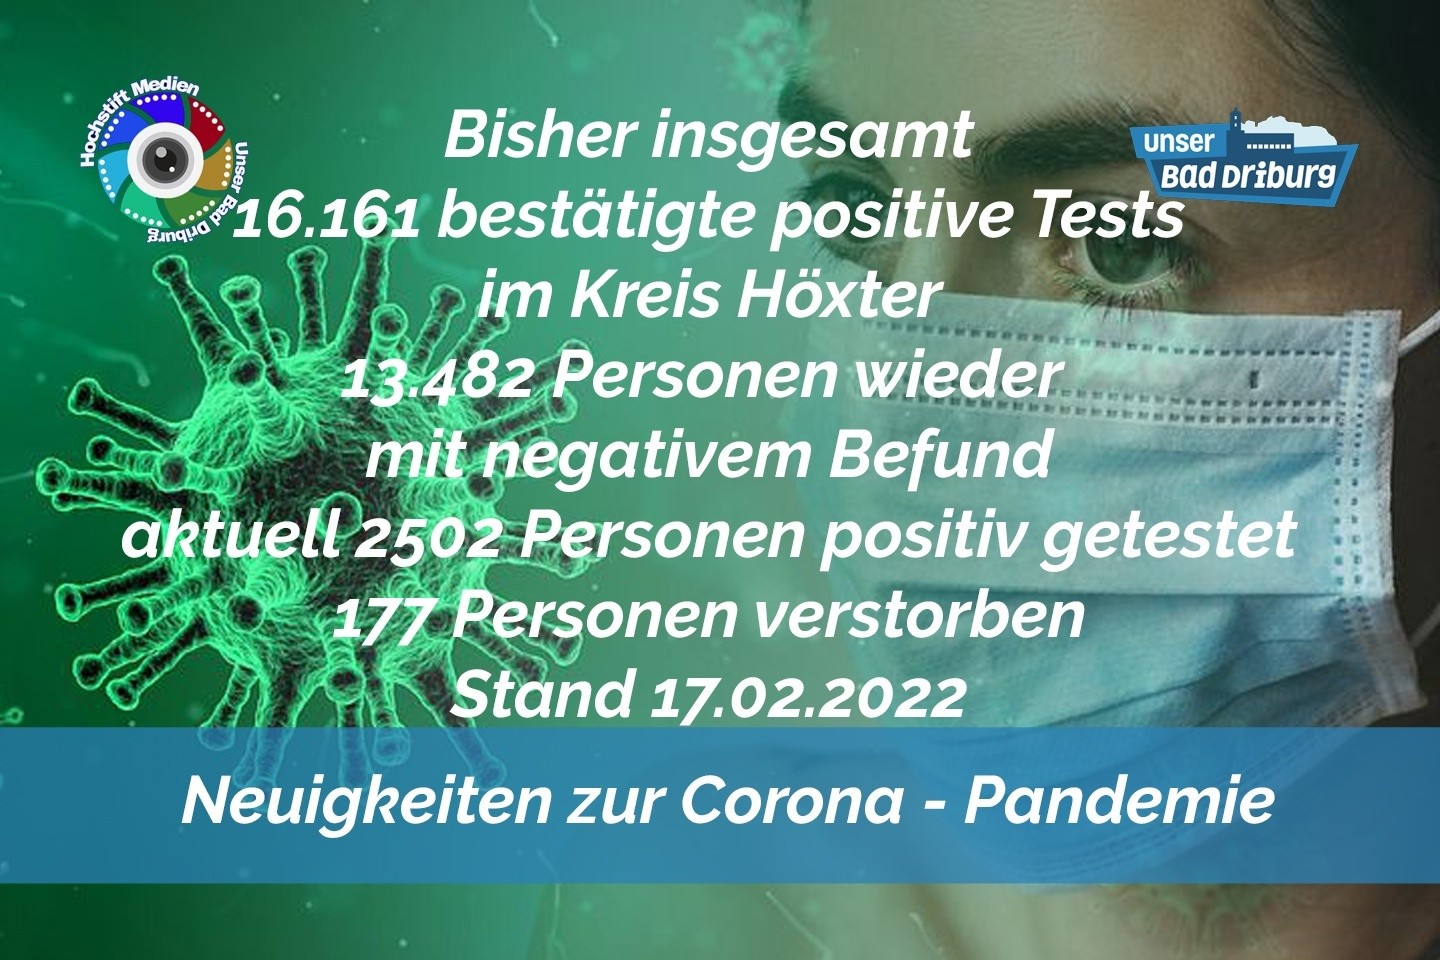 Update 17. Februar 2022: 381 weitere amtlich positive Tests im Kreis Höxter